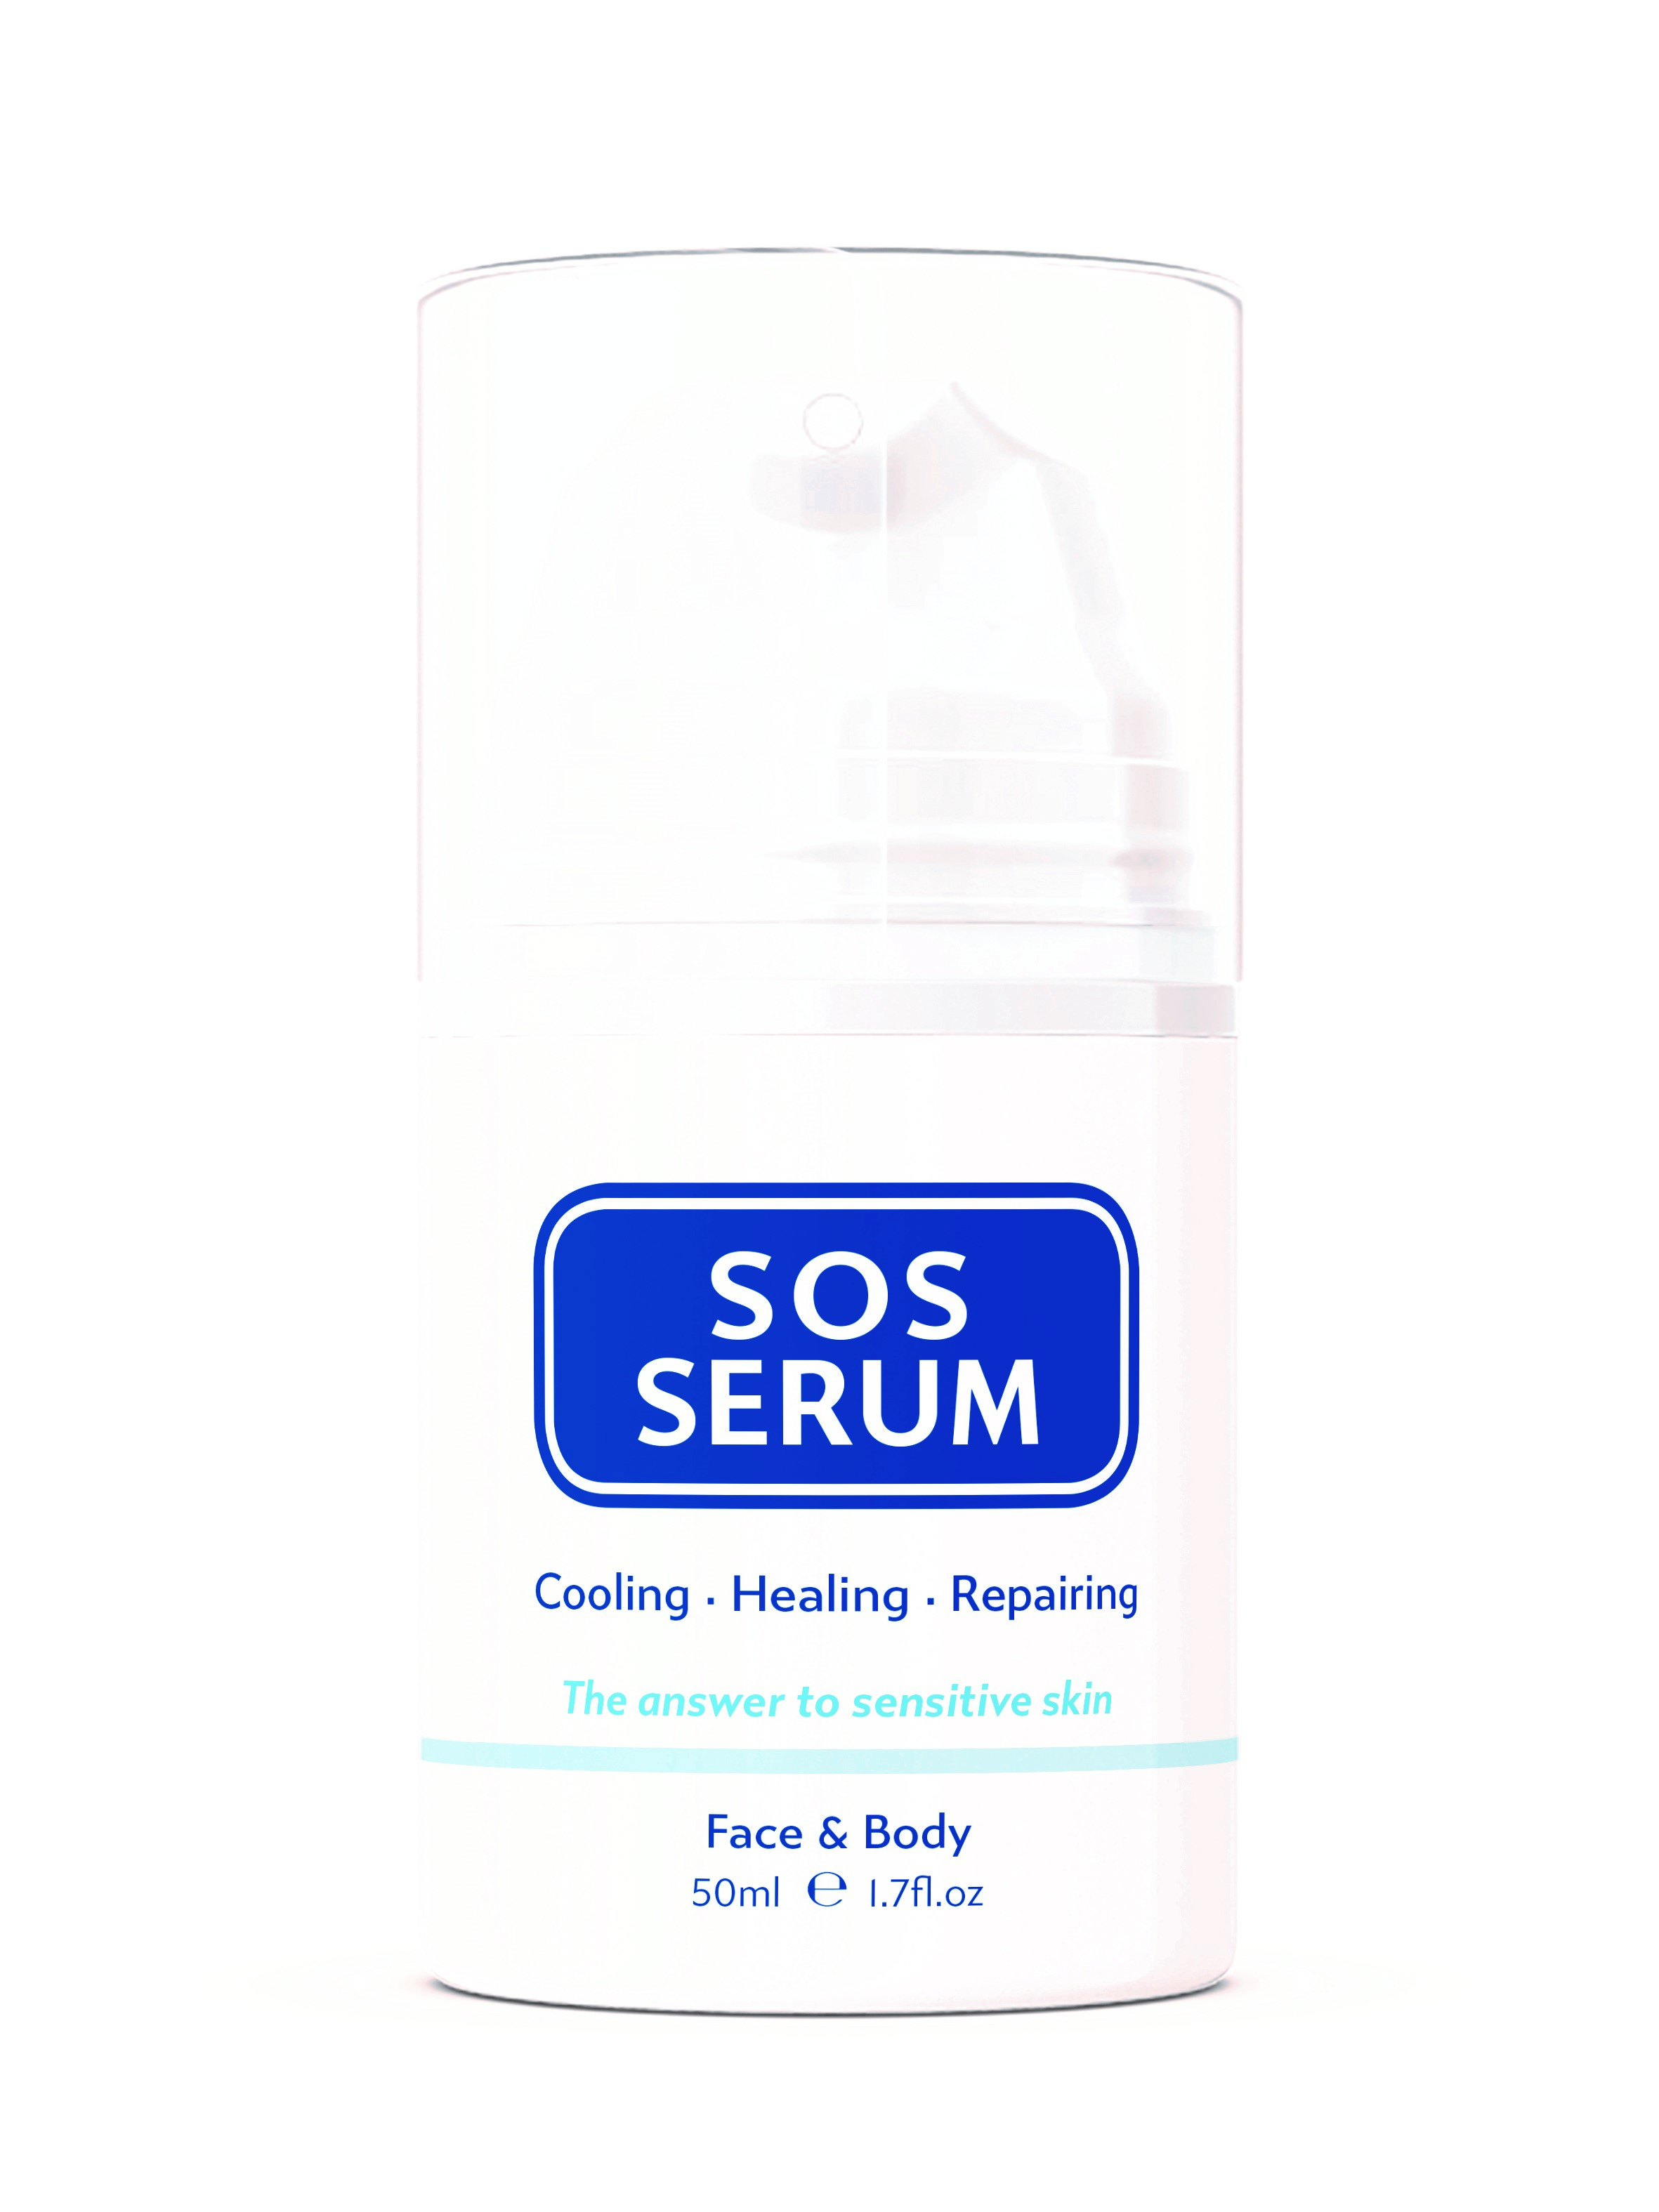 SOS Serum Skincare Face & Body cream